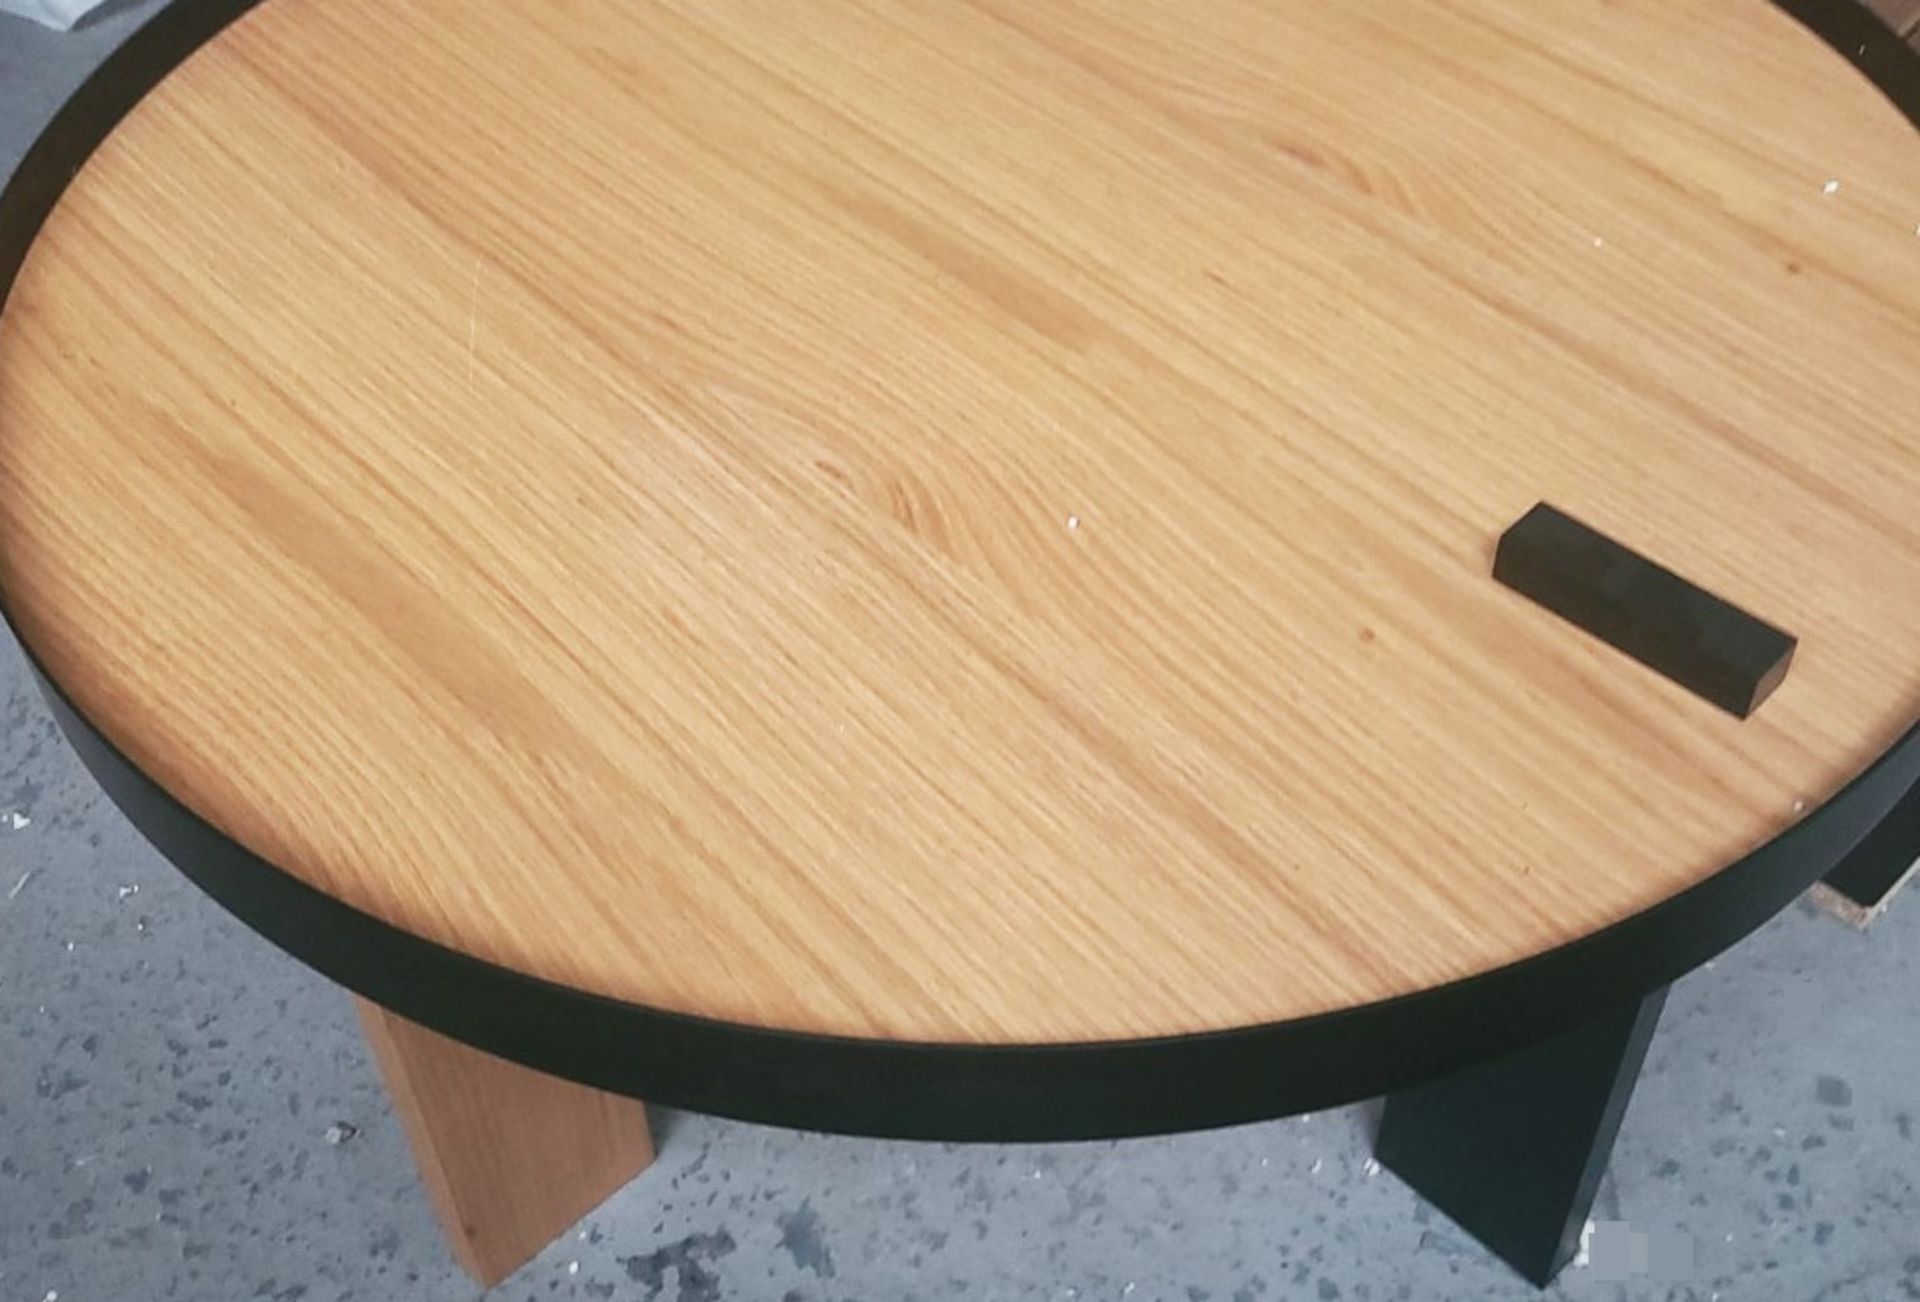 1 x TEMA HOME 'Bruno' Rodolphe Castellani Designed Coffee Table In Oak Veneer & Black Metal - Image 5 of 6